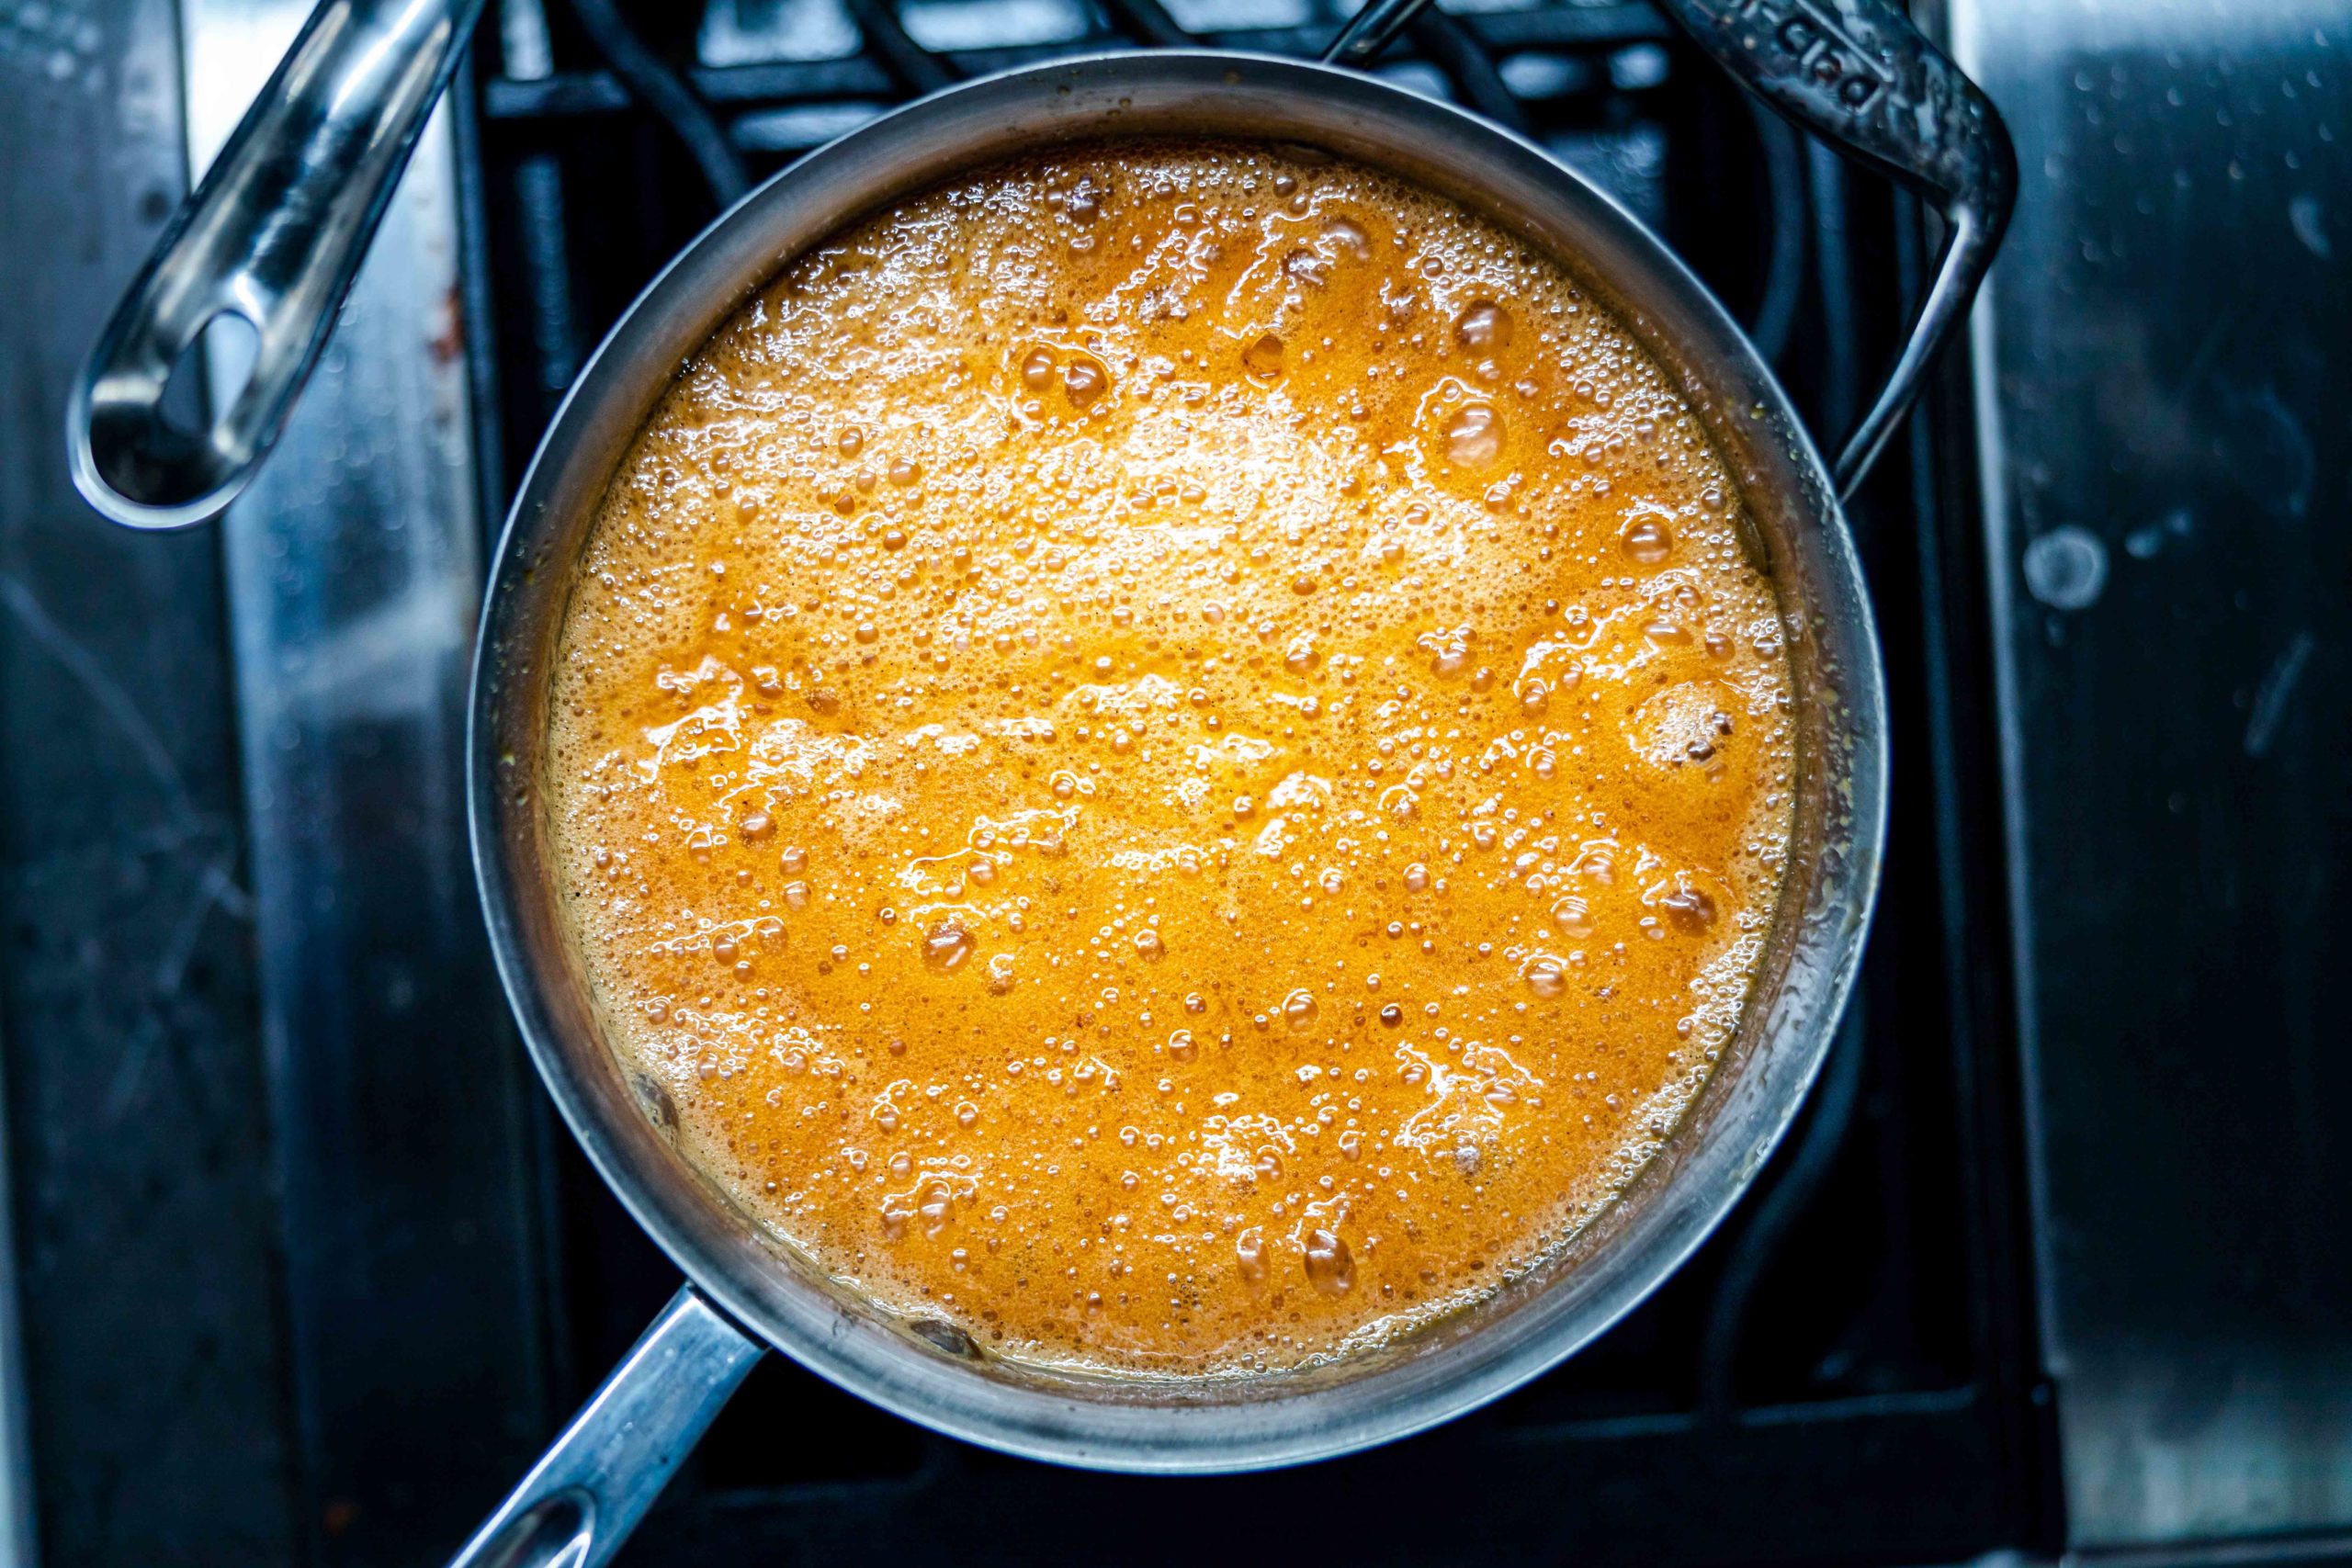 Foamy caramel in a saucepan